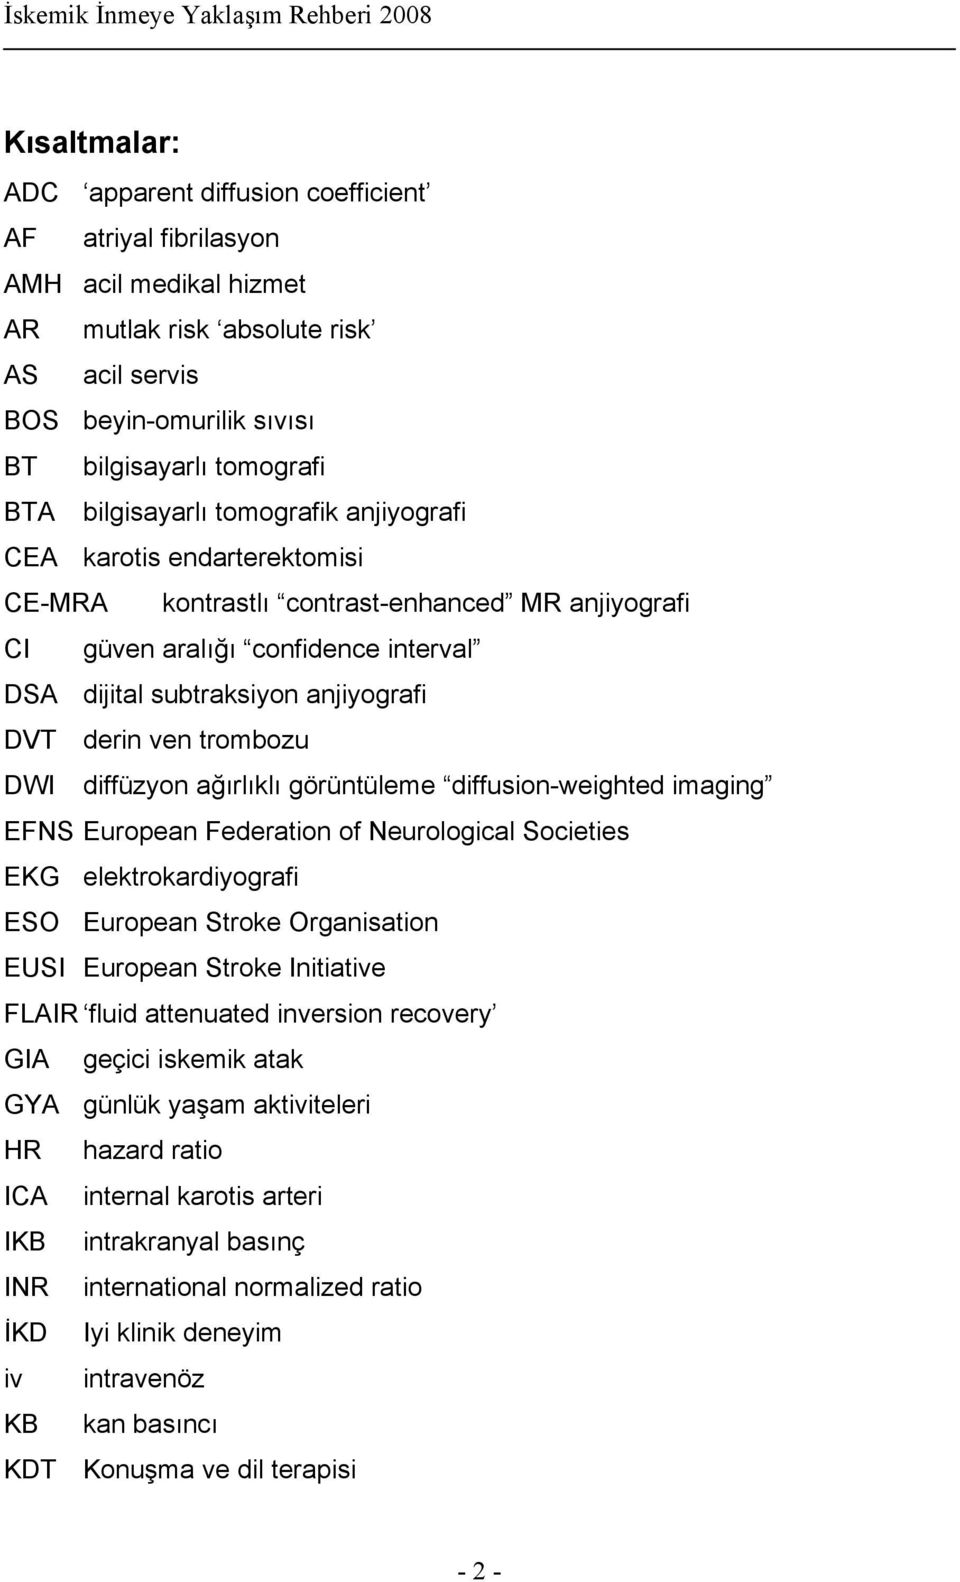 ven trombozu DWI diffüzyon ağırlıklı görüntüleme diffusion-weighted imaging EFNS European Federation of Neurological Societies EKG elektrokardiyografi ESO European Stroke Organisation EUSI European